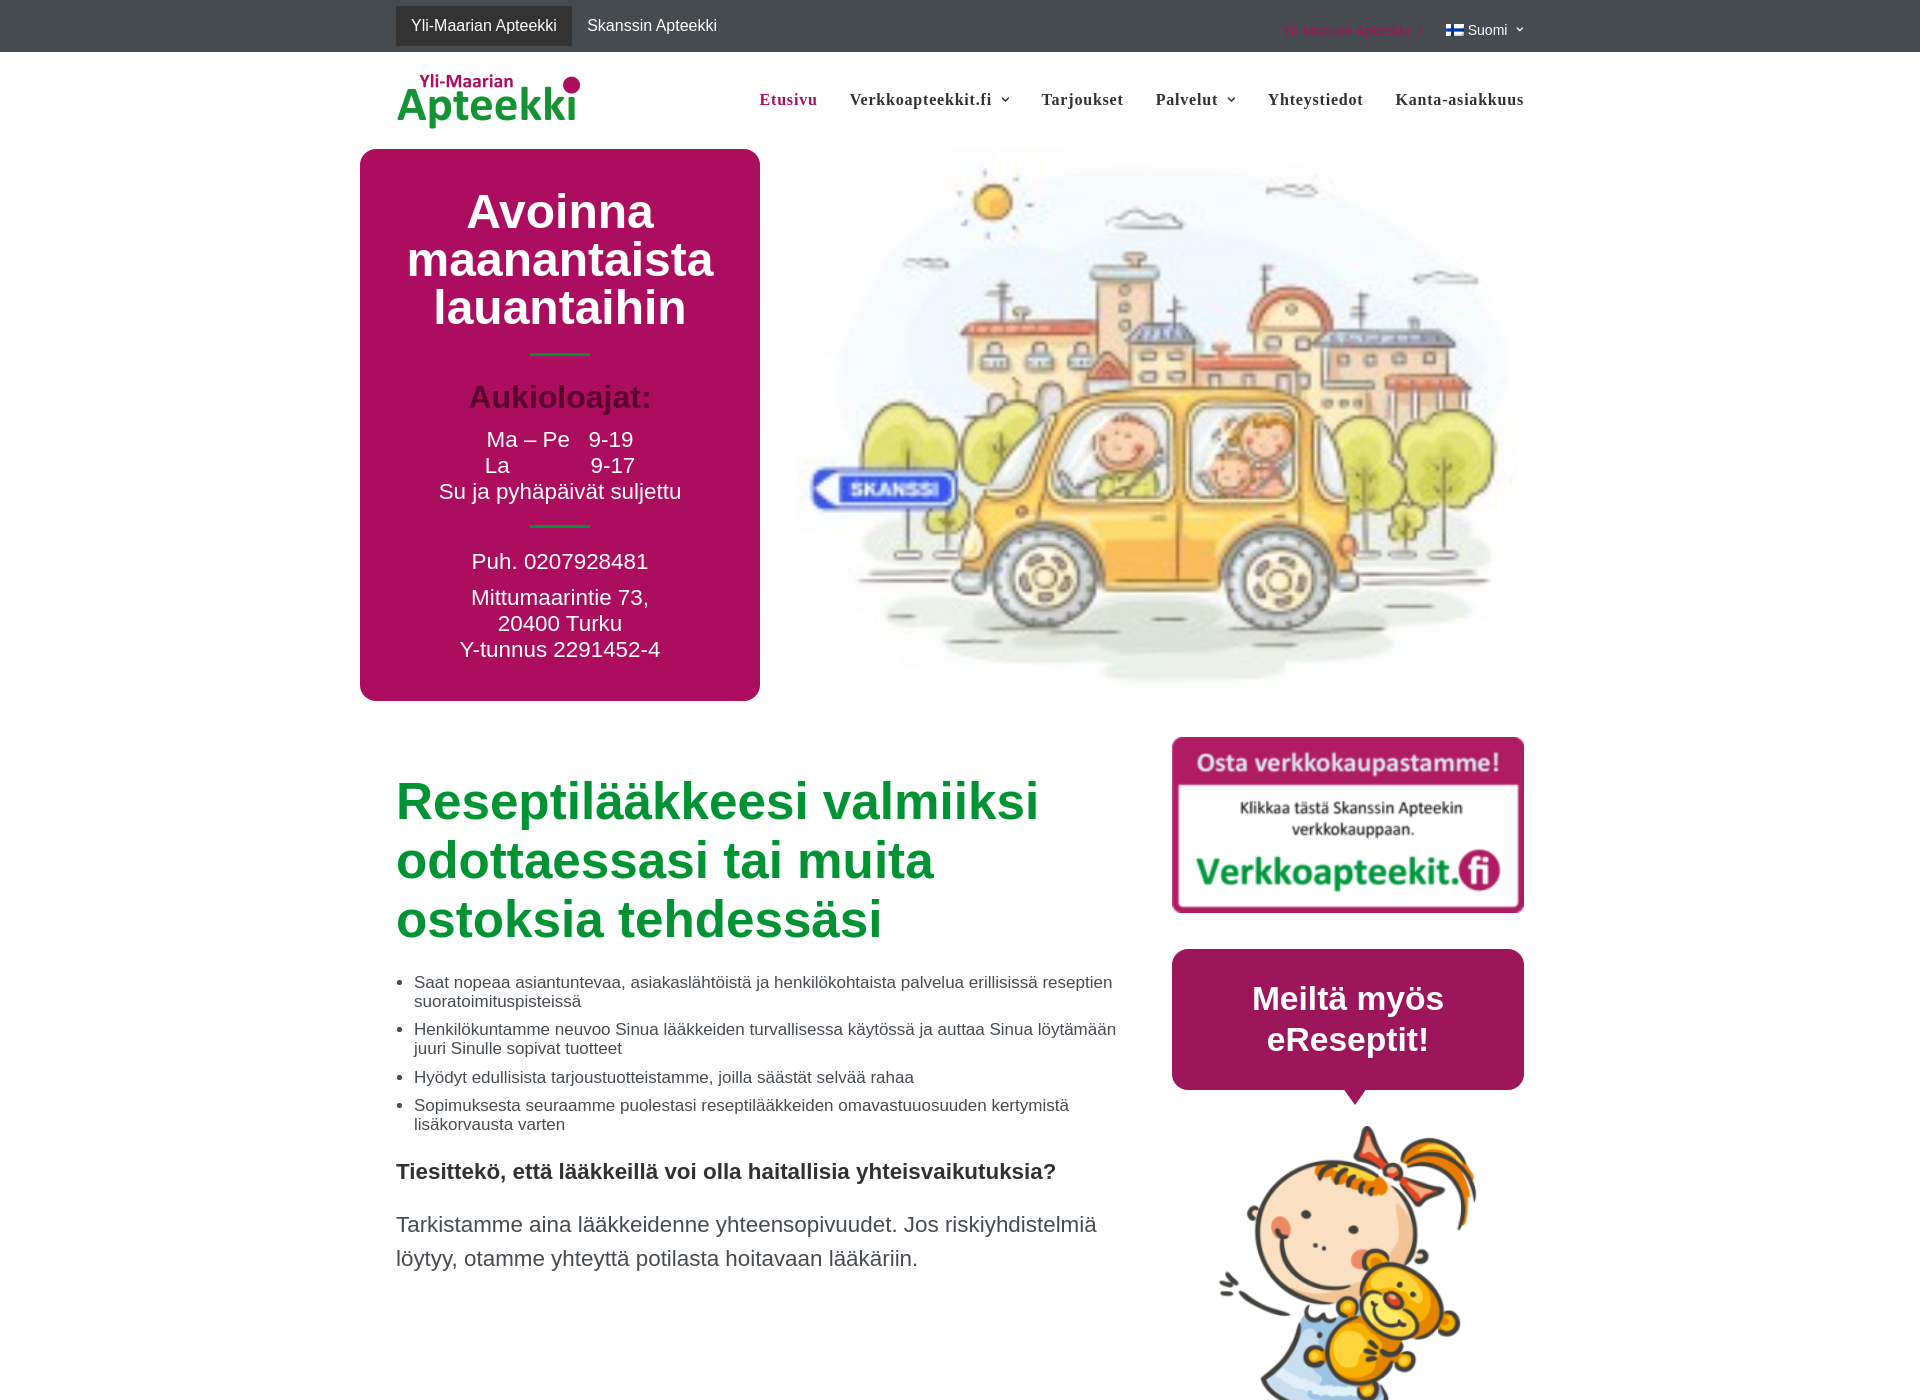 Skärmdump för ylimaarianapteekki.fi